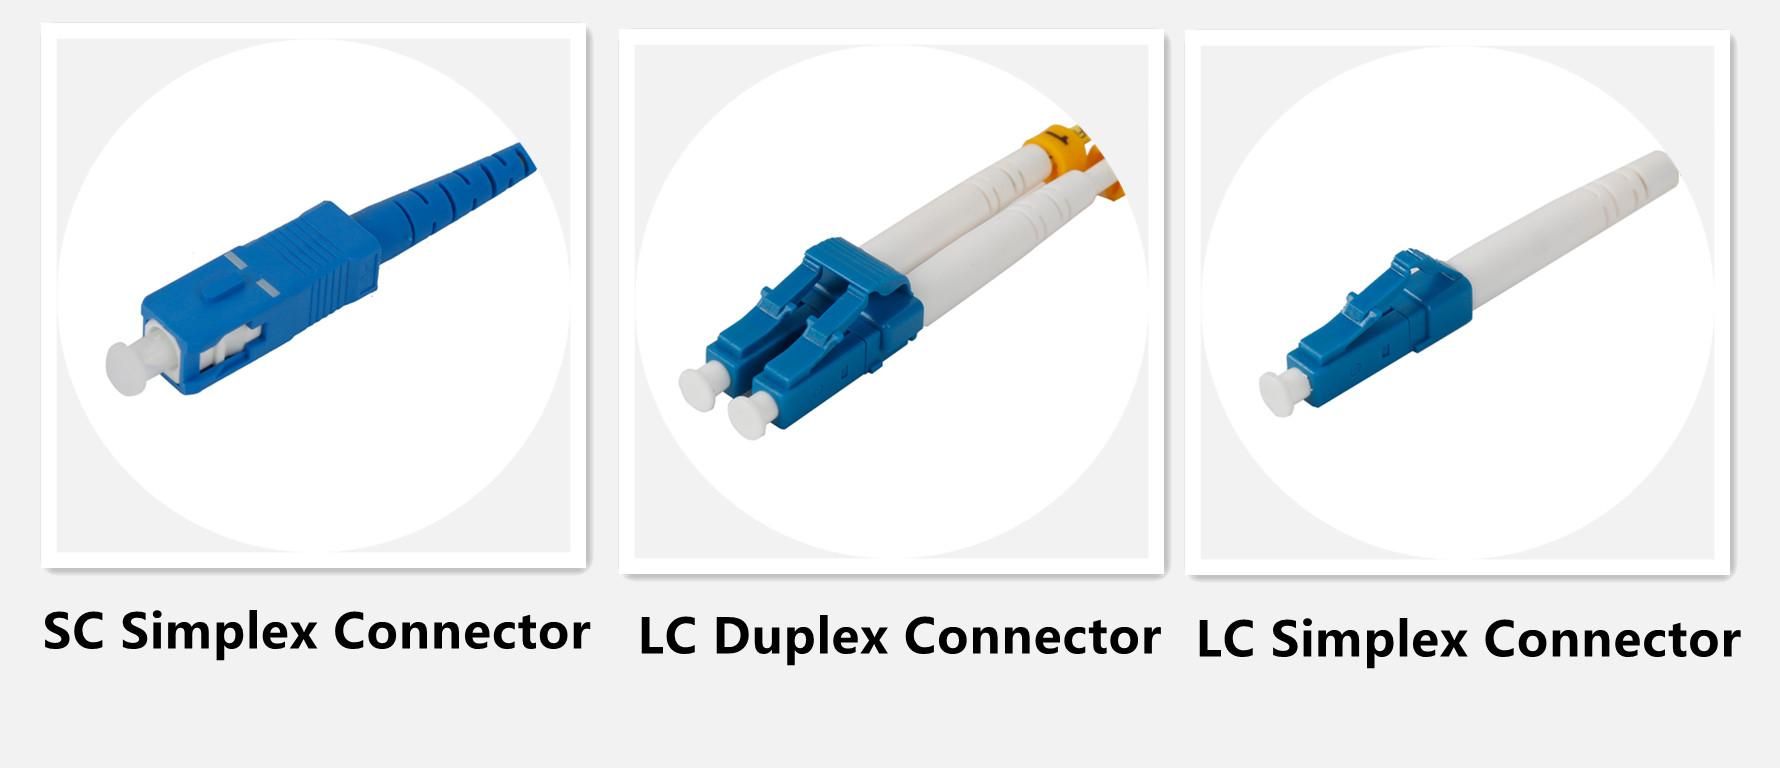 LC Product in Fiber Optic